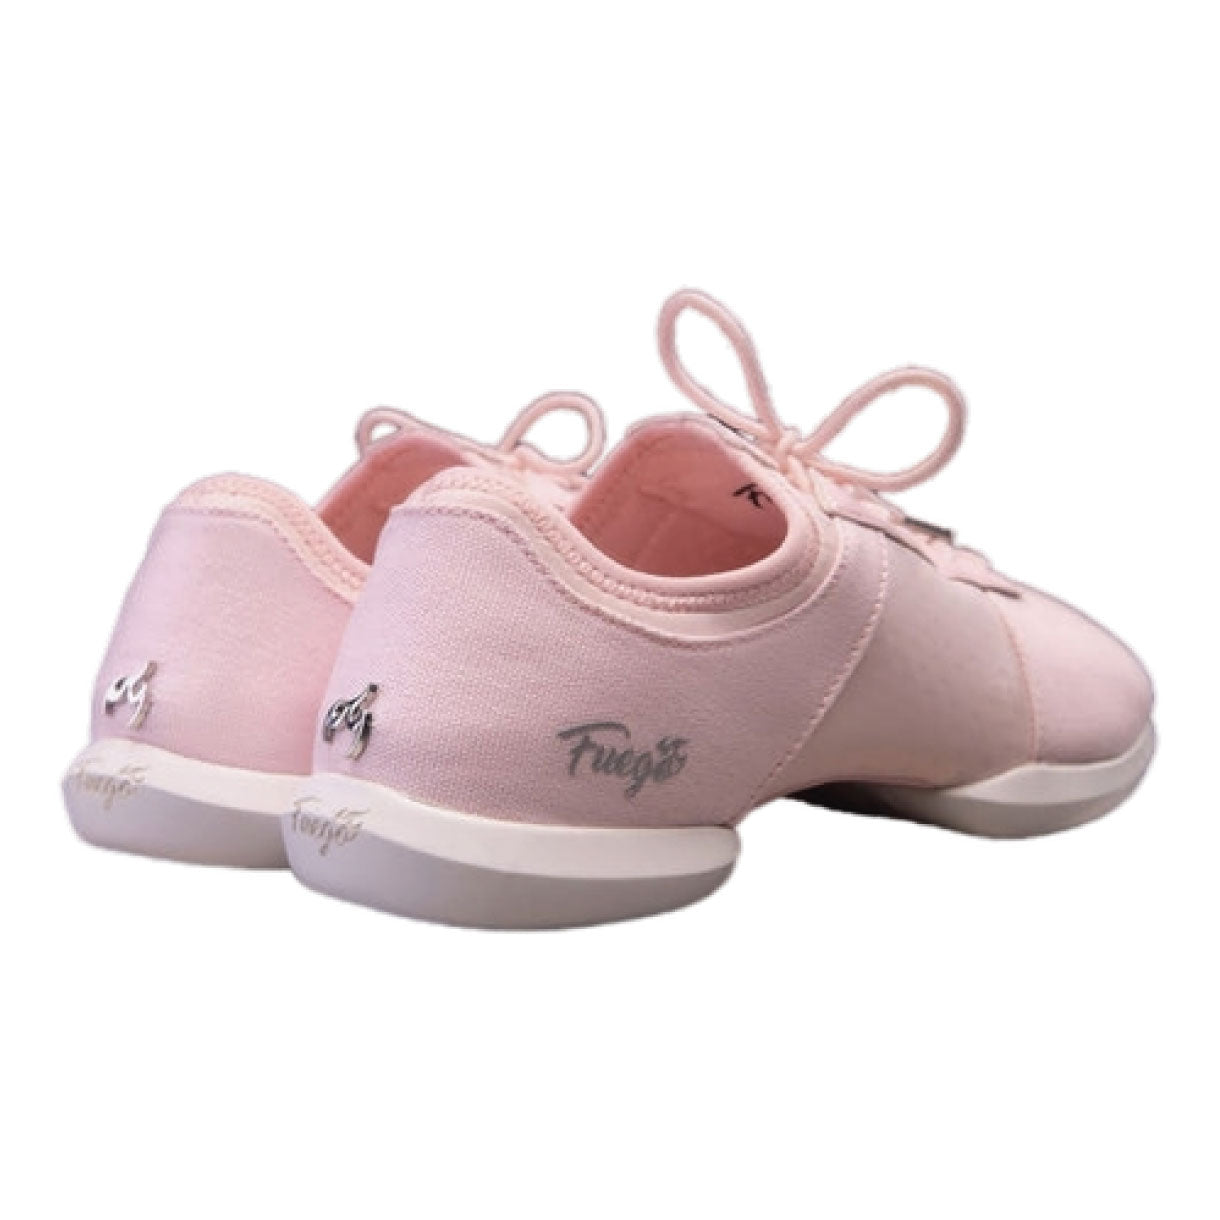 Zapatillas de deporte de baile de FUE en rosa con suela dividida